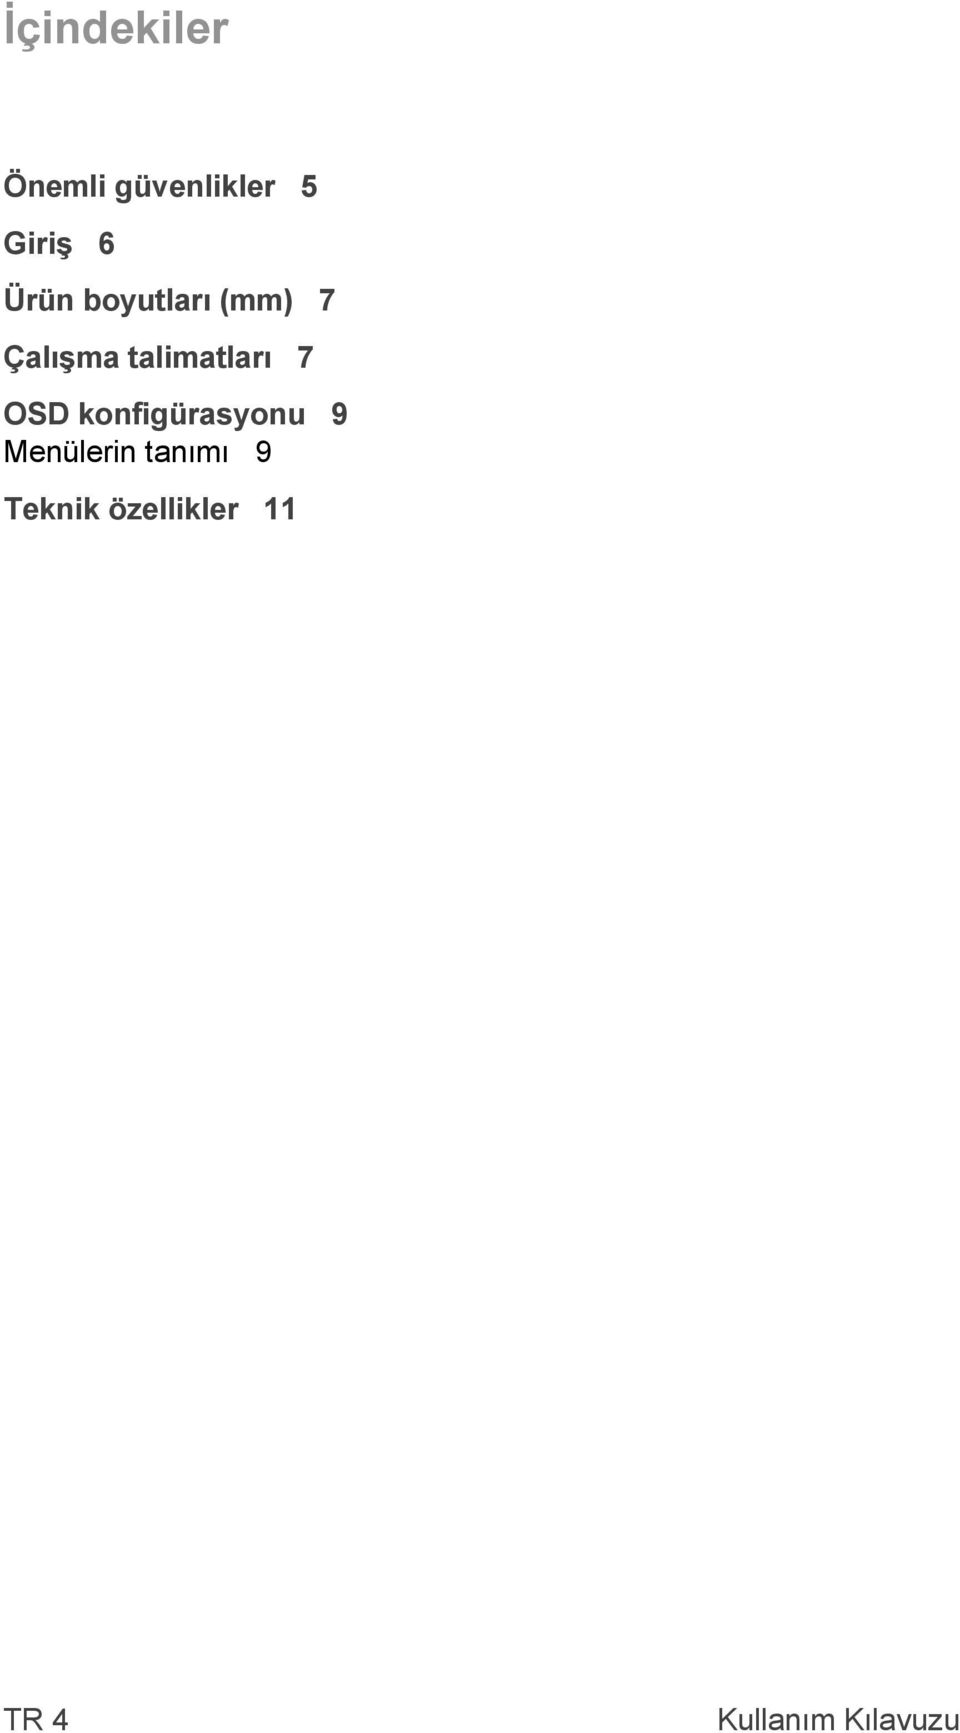 talimatları 7 OSD konfigürasyonu 9